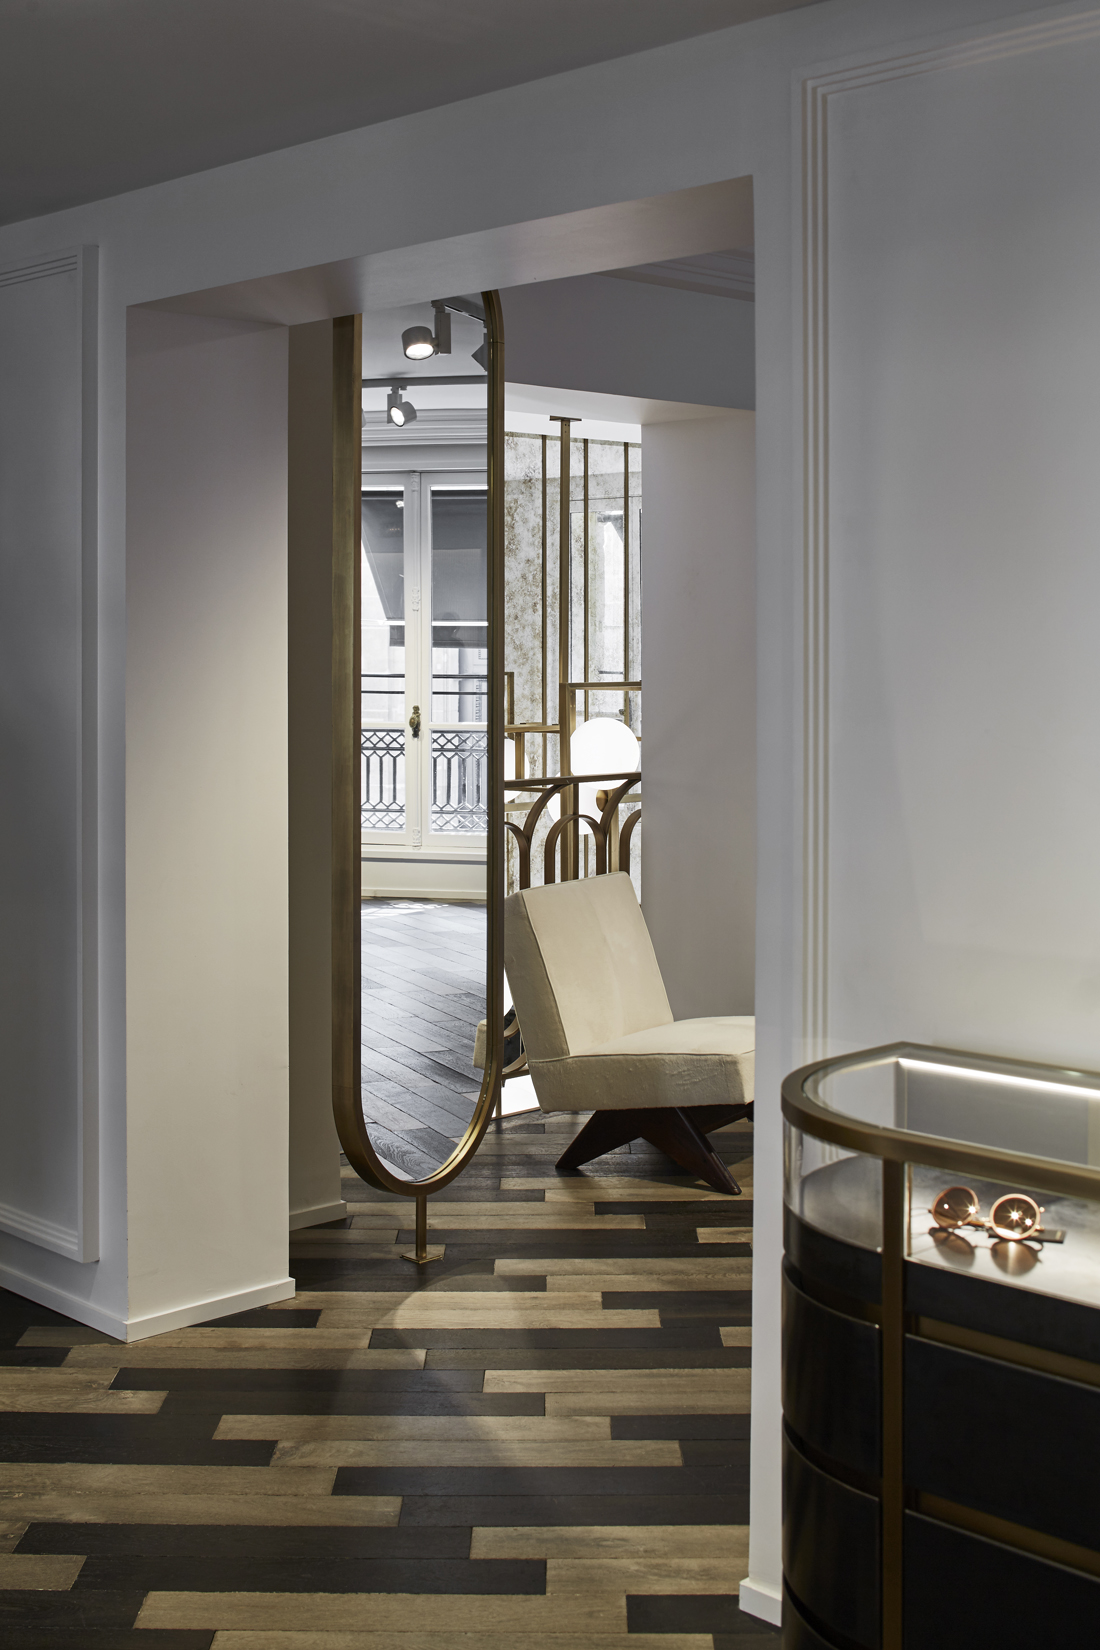 55 Croisette - A Parisian Boutique by Humbert & Poyet